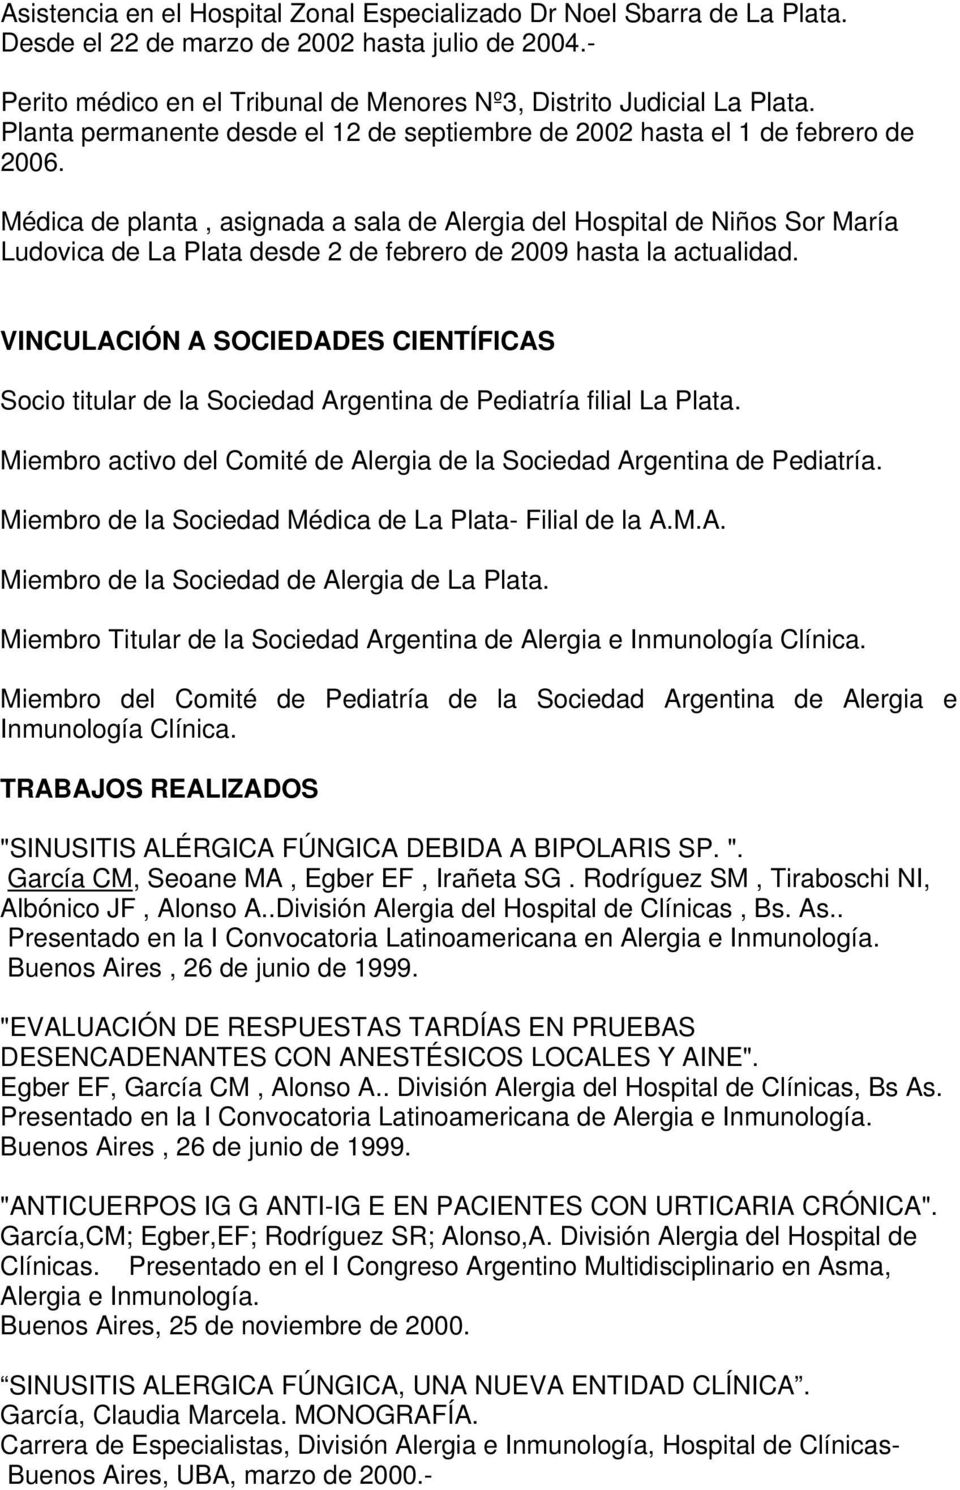 Médica de planta, asignada a sala de Alergia del Hospital de Niños Sor María Ludovica de La Plata desde 2 de febrero de 2009 hasta la actualidad.